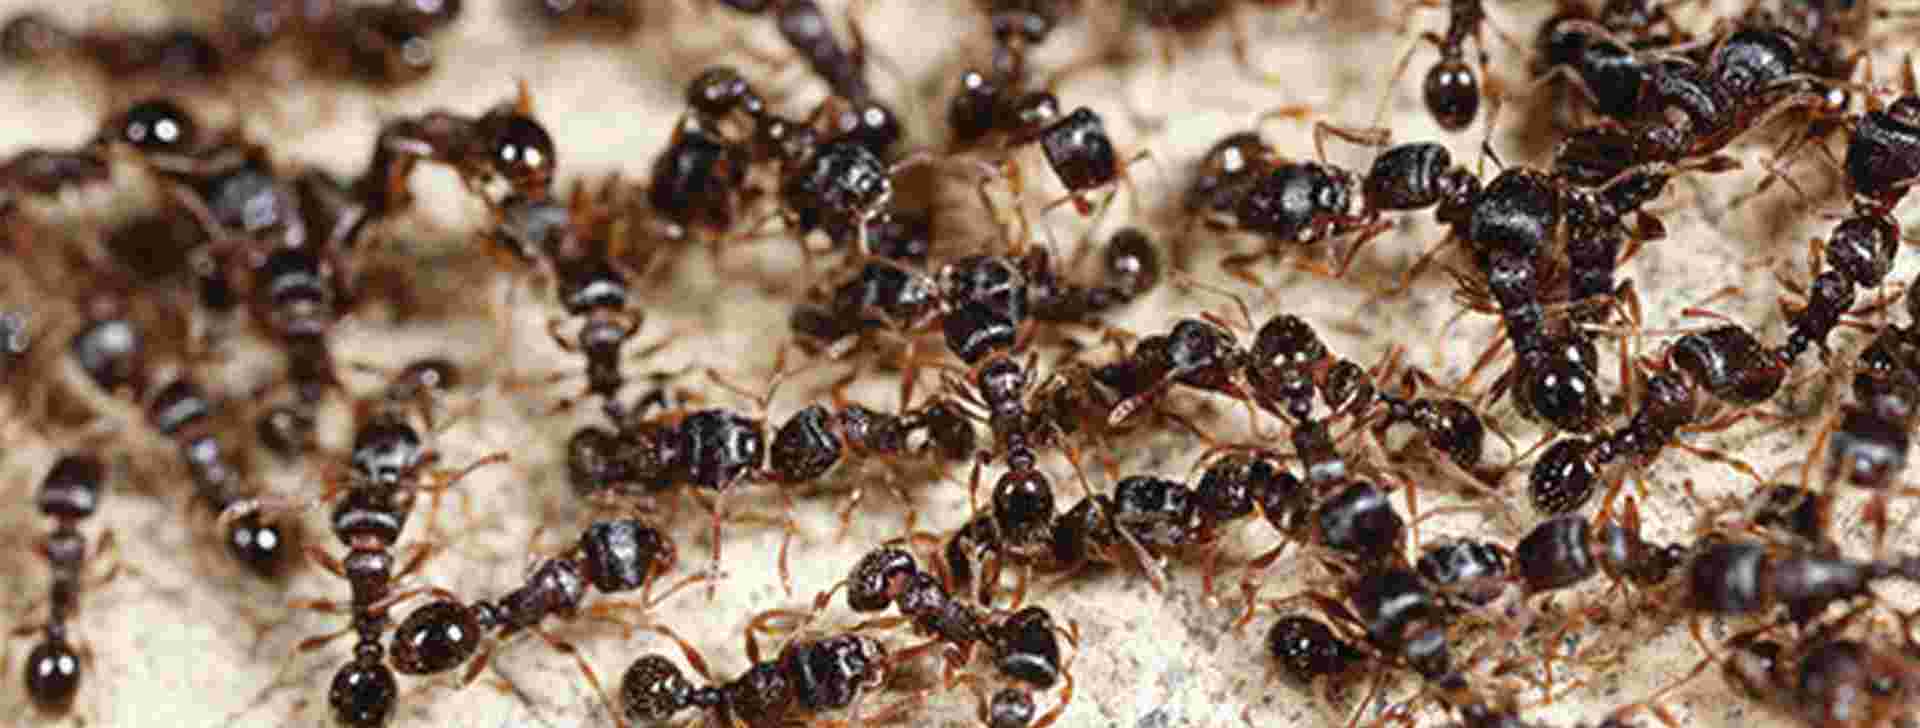 Hoe bestrijd ik mieren? 